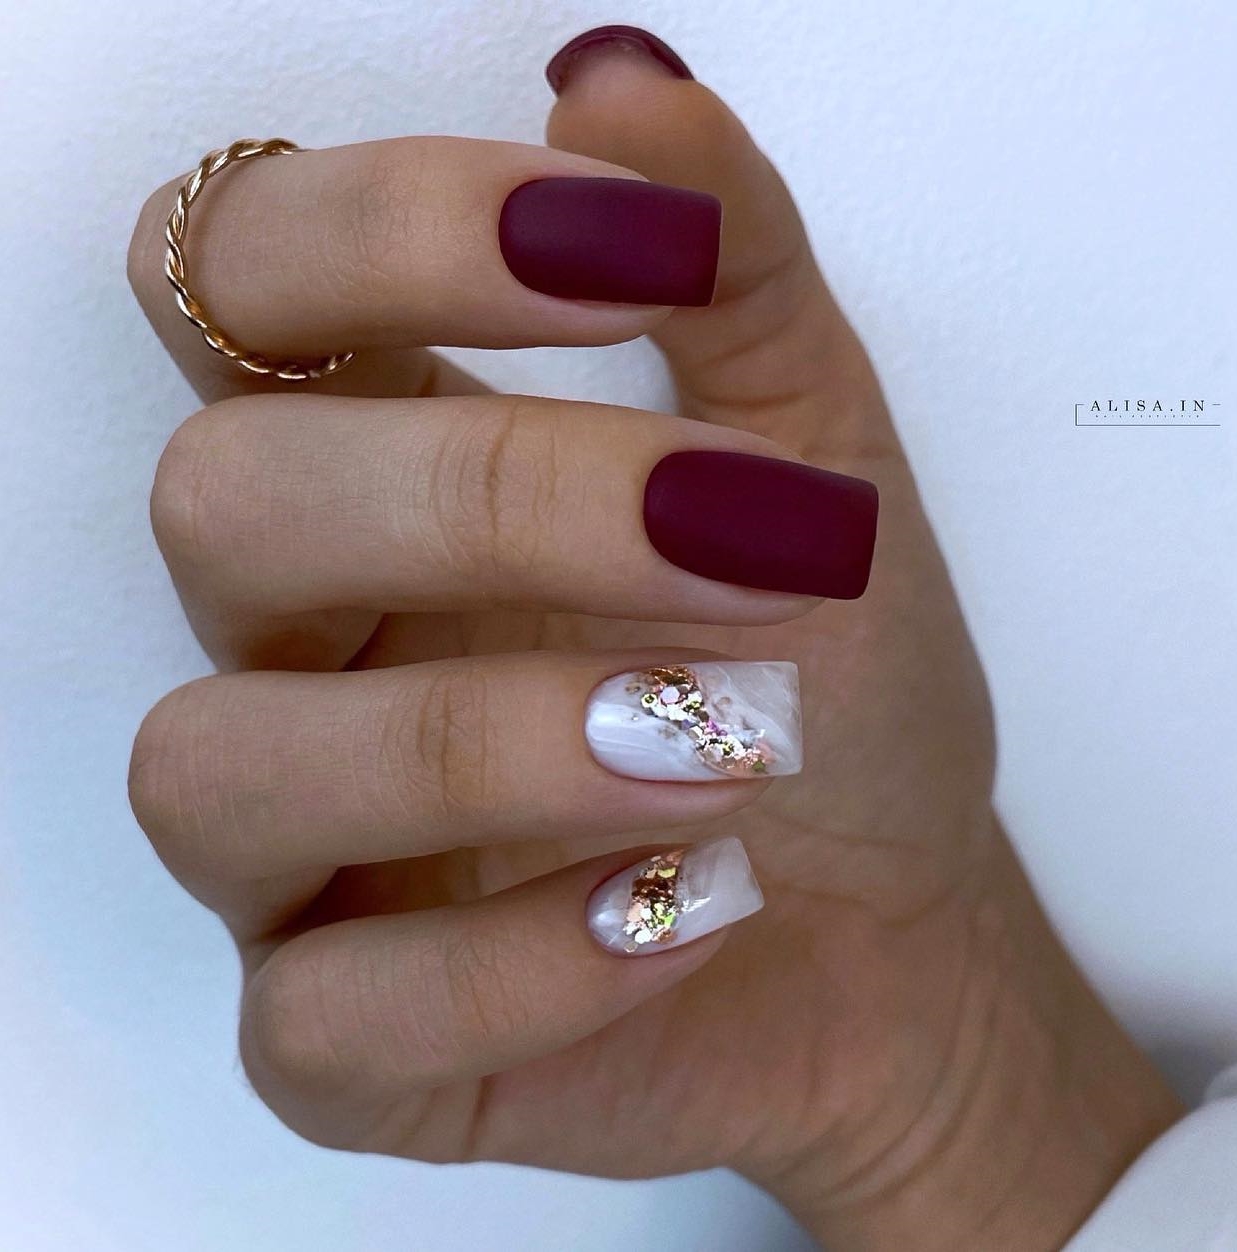 Vierkante matte bordeauxrode nagels met wit en goud ontwerp